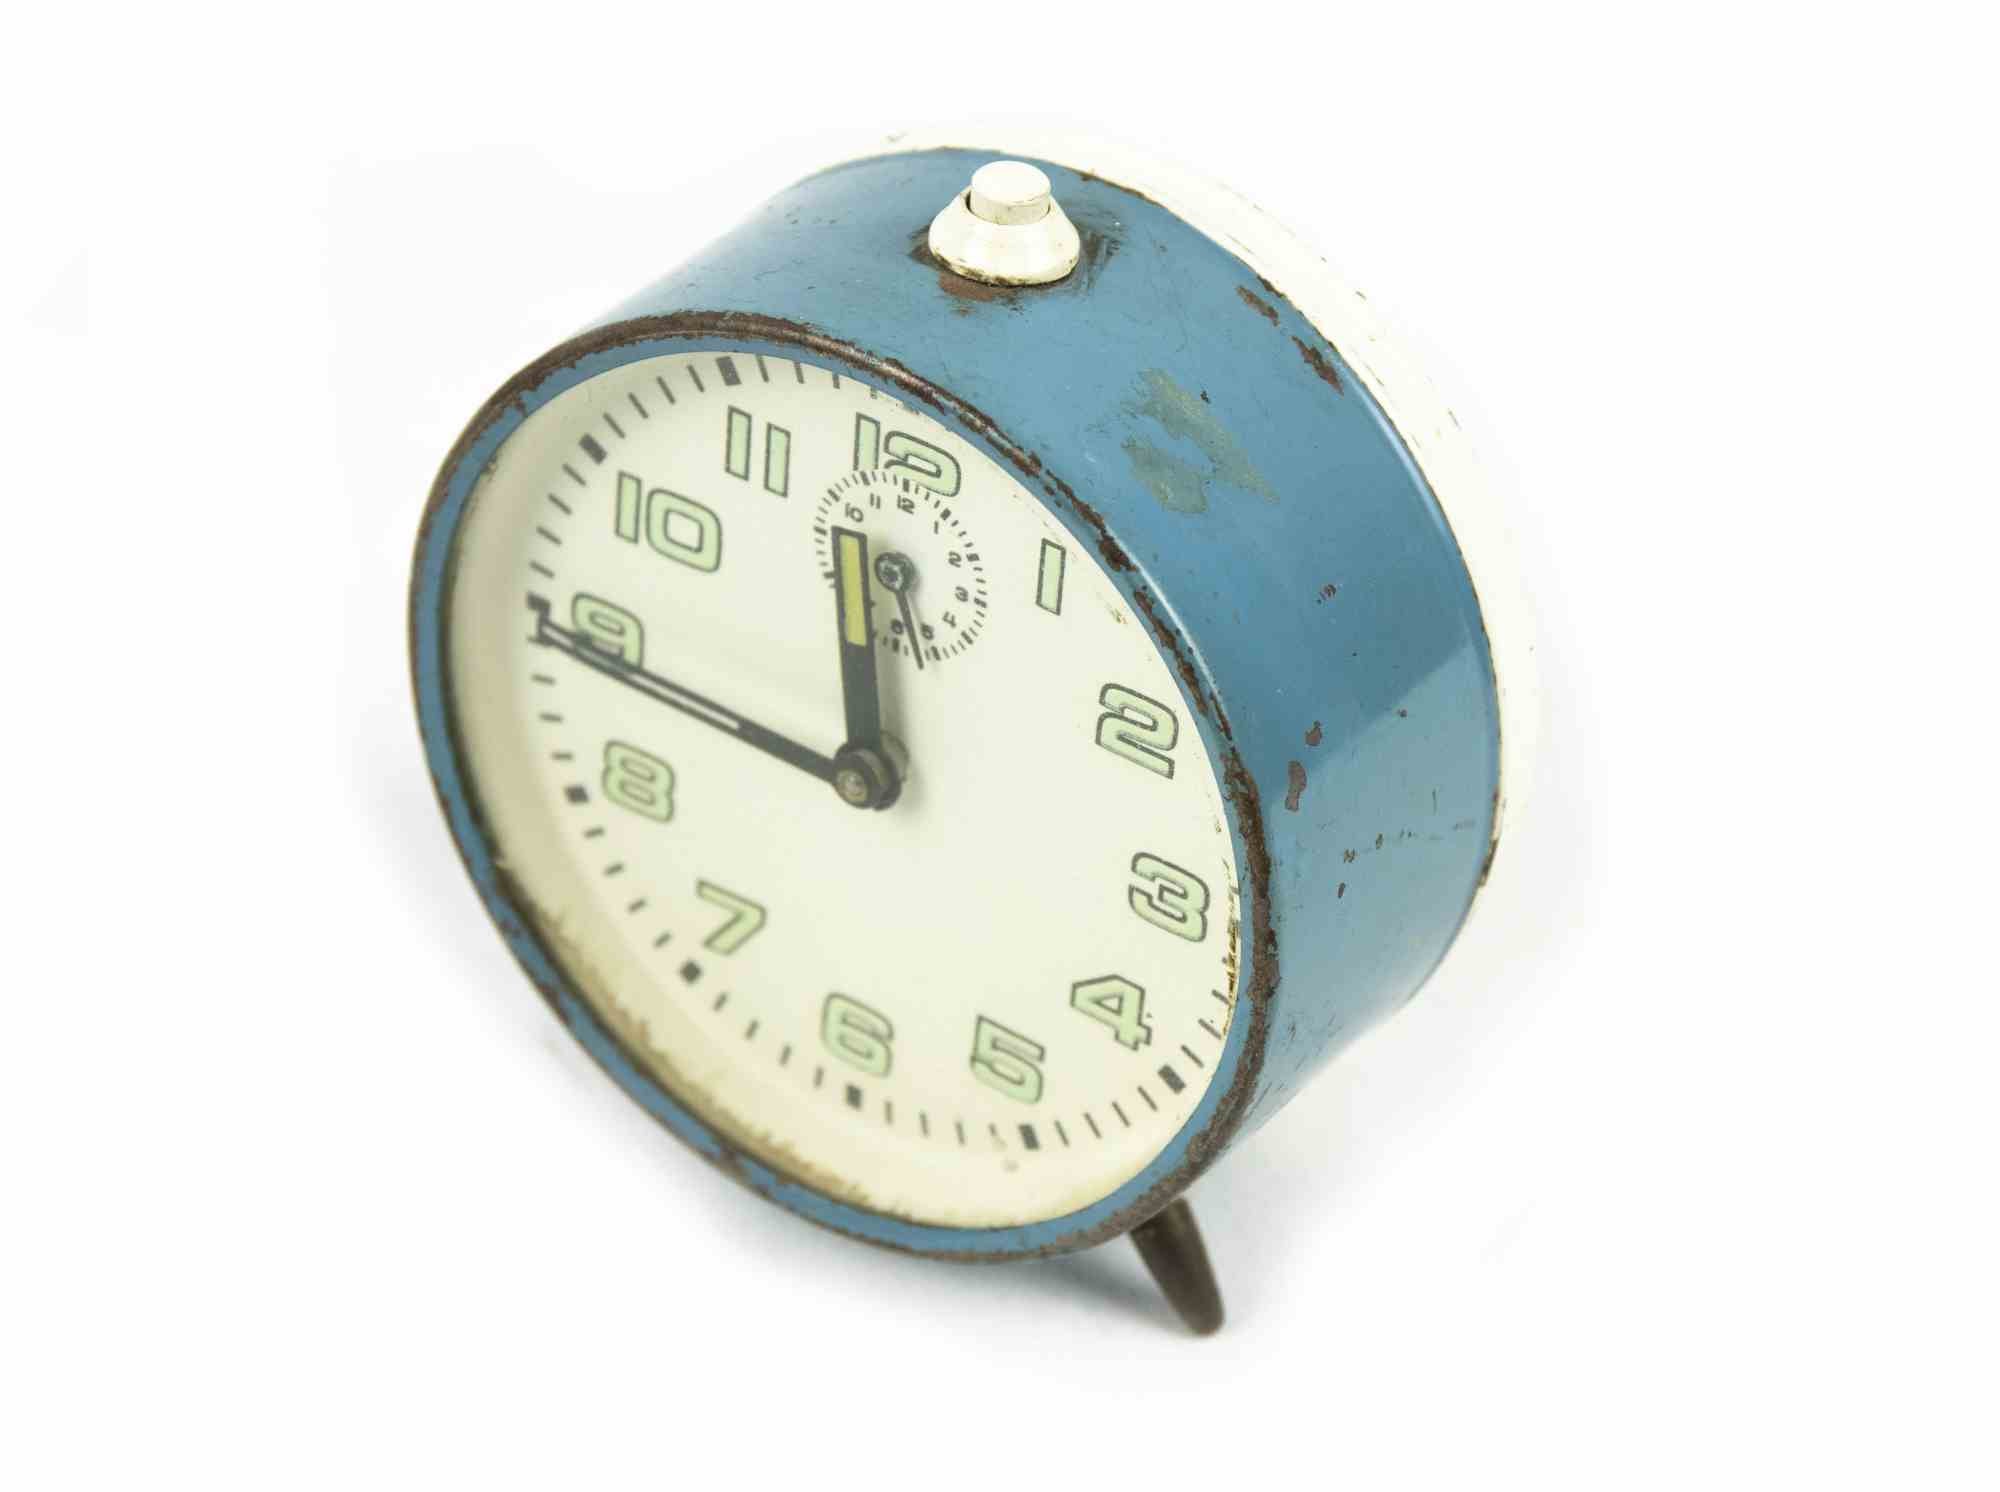 Vintage Alarm Clock ist ein dekoratives Objekt aus den 1970er Jahren.

Eine Vintage-Uhr hellblau gefärbt.

Das perfekte Geschenk für einen Sprung in die Vergangenheit.

Aufgrund der Zeit nicht in perfektem Zustand.